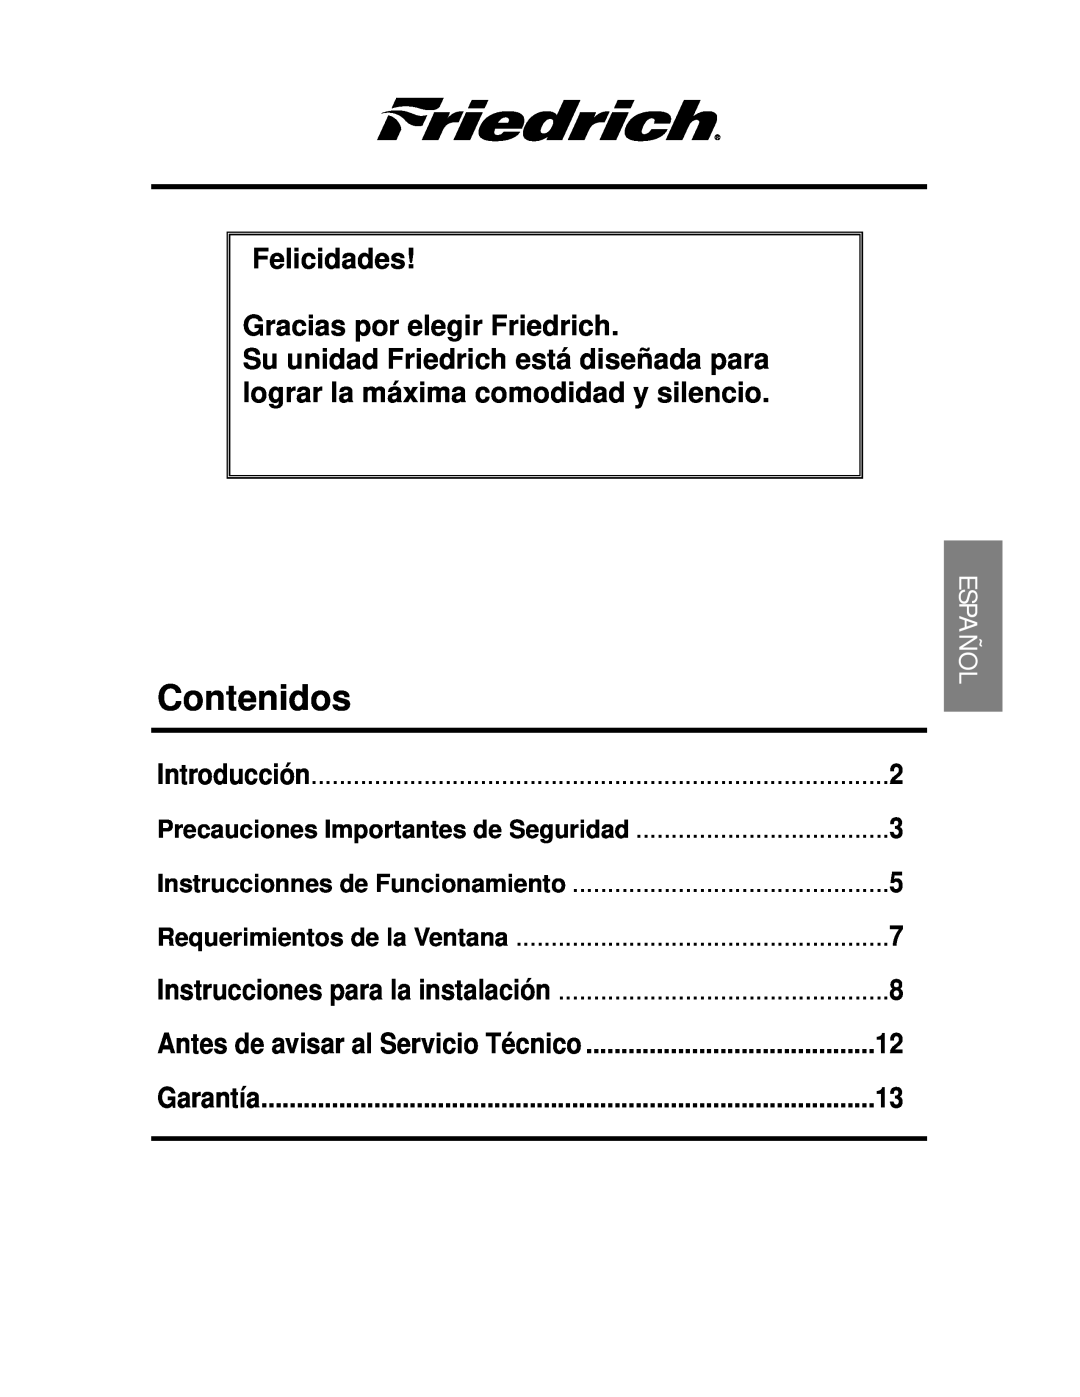 Friedrich CP06 manual Contenidos, Felicidades Gracias por elegir Friedrich, Introducción, Instruccionnes de Funcionamiento 